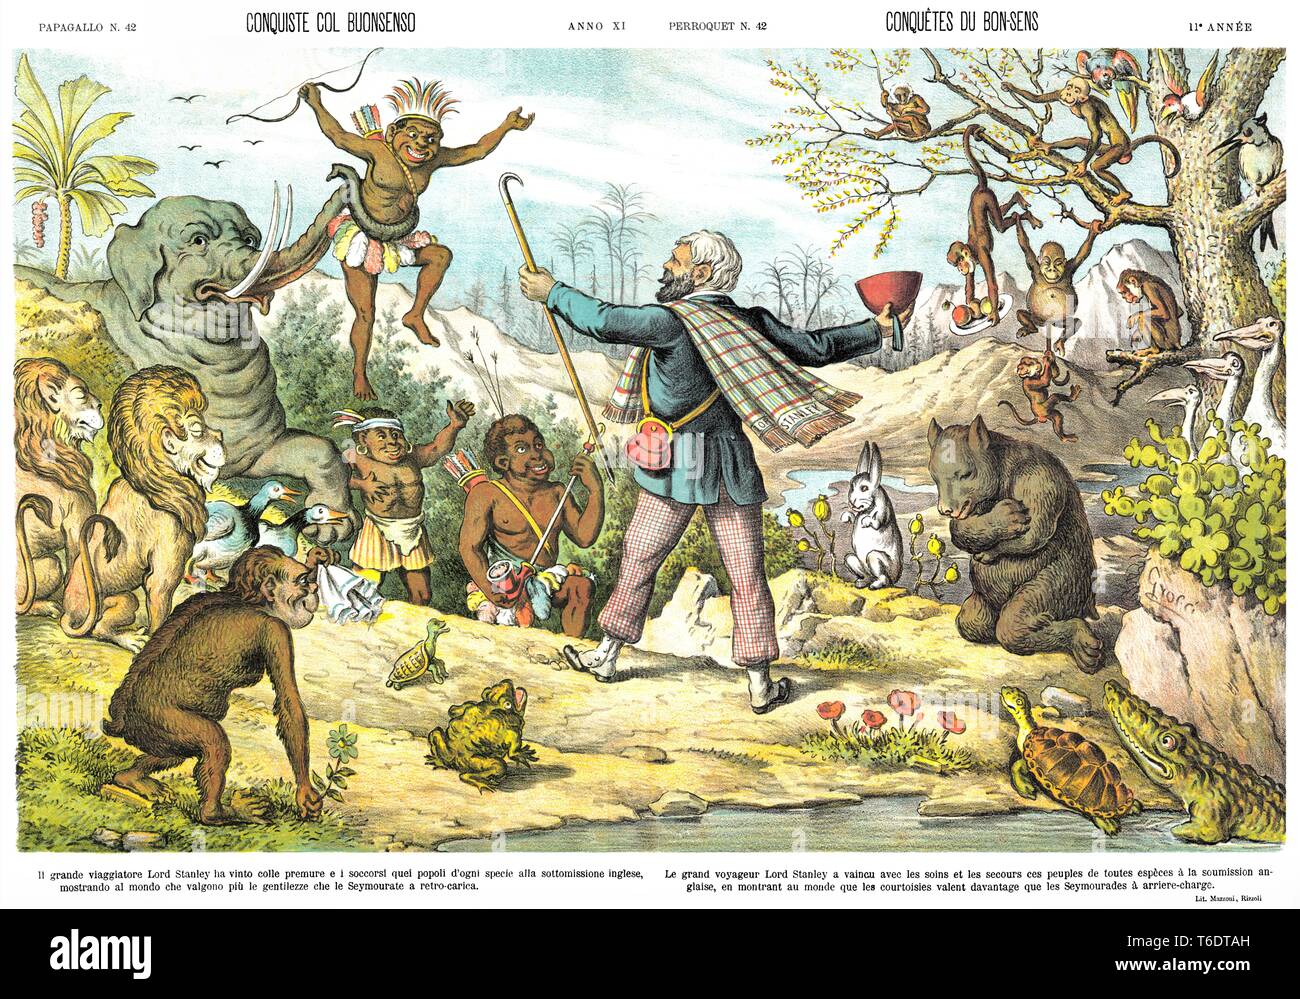 Las conquistas con el sentido común, por la caricatura satírica semanal Il Papagallo 1883 Foto de stock